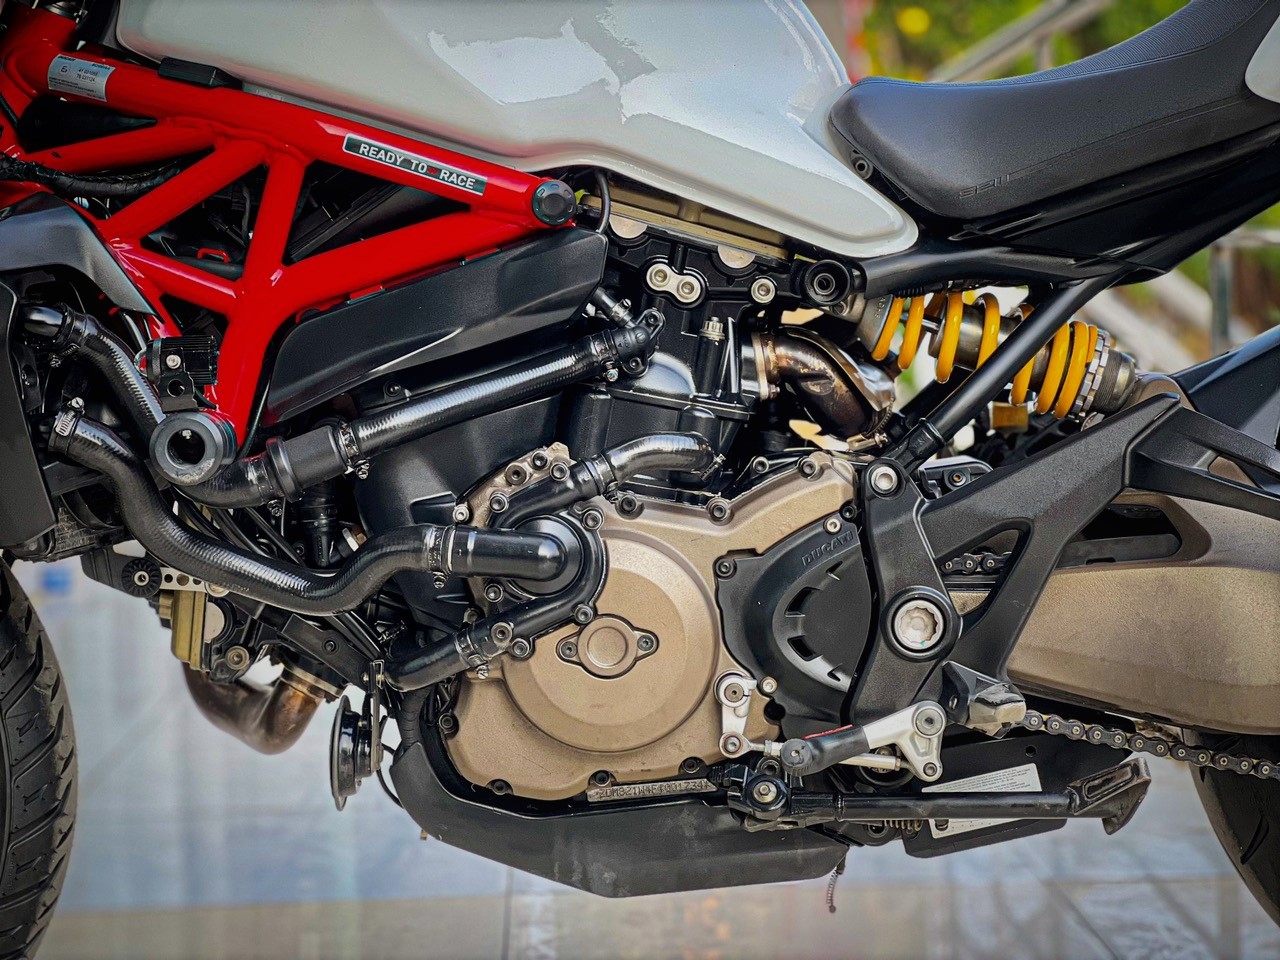 296. Ducati Monster 821 2017